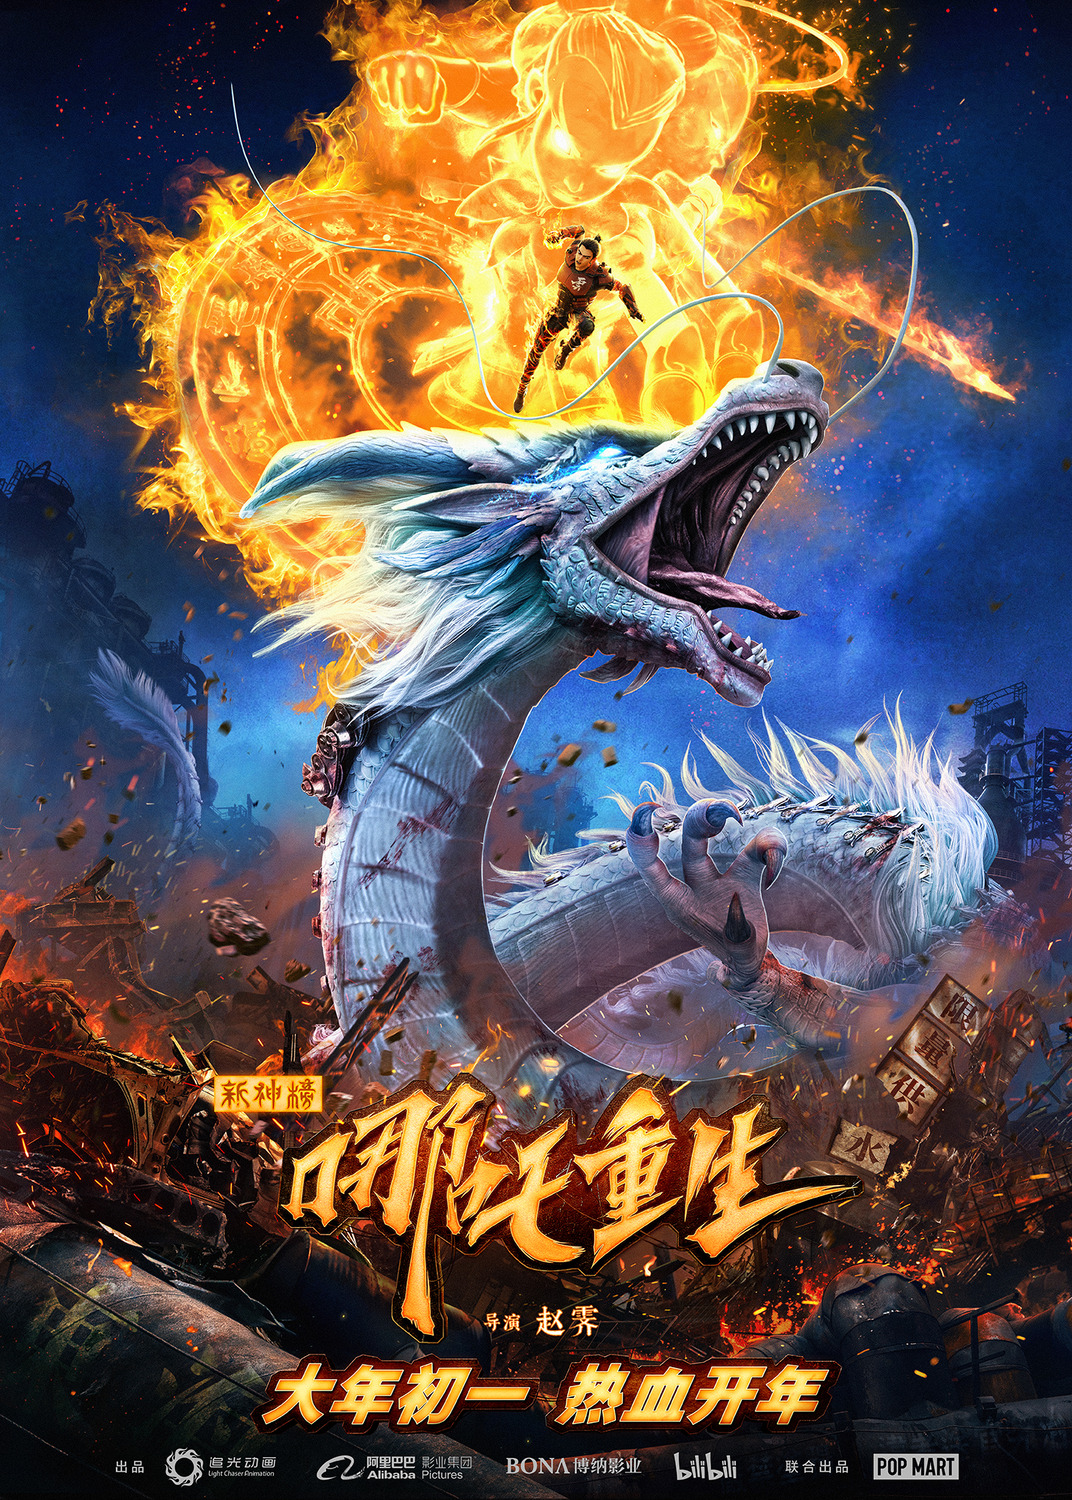 Extra Large Movie Poster Image for Xin Shen Bang : Na Zha Chong Sheng 